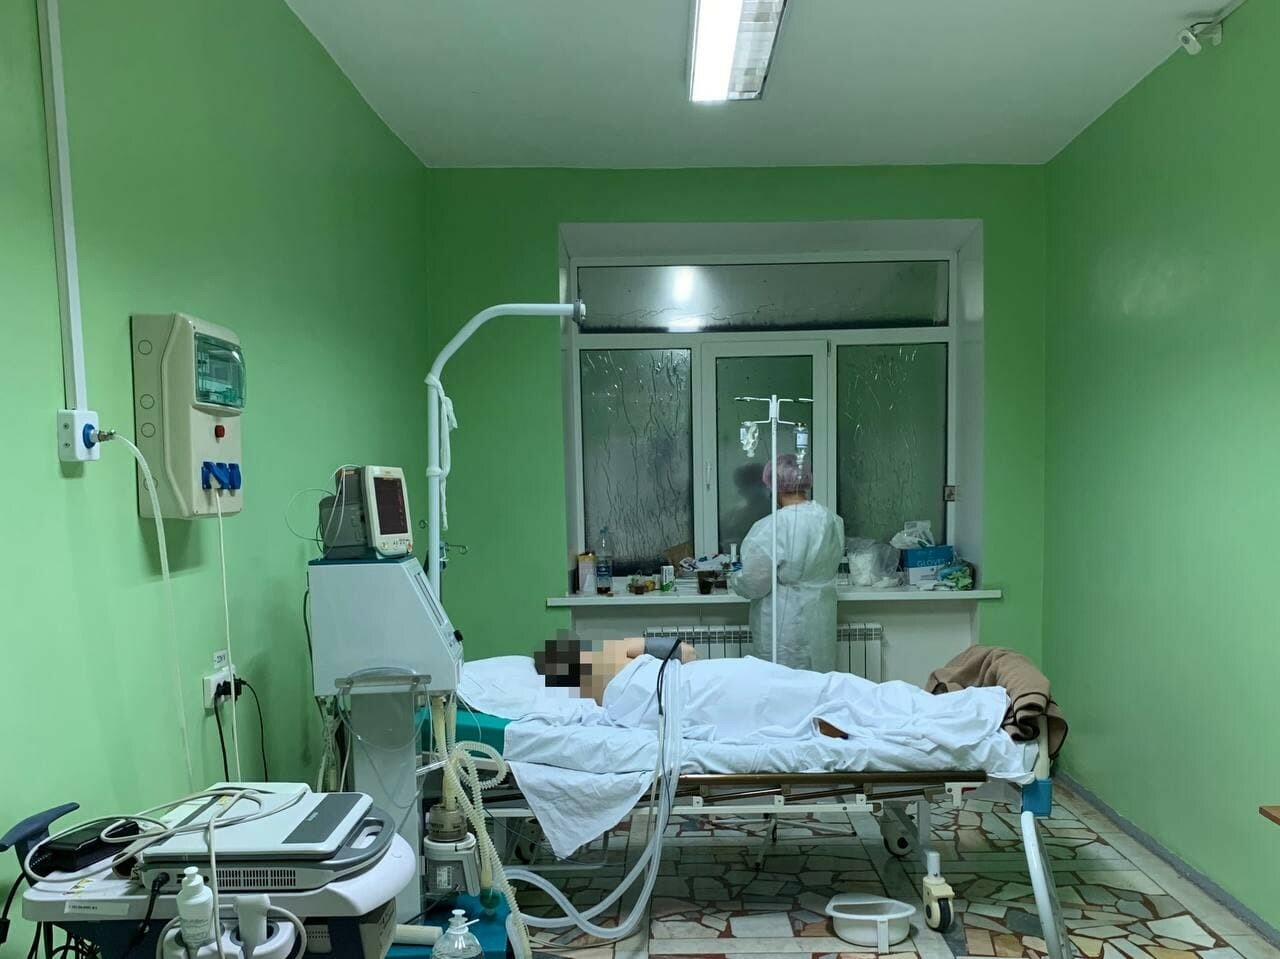 Будто легкие заполнены водой: глава Алексеевского района навестил пациентов госпиталя